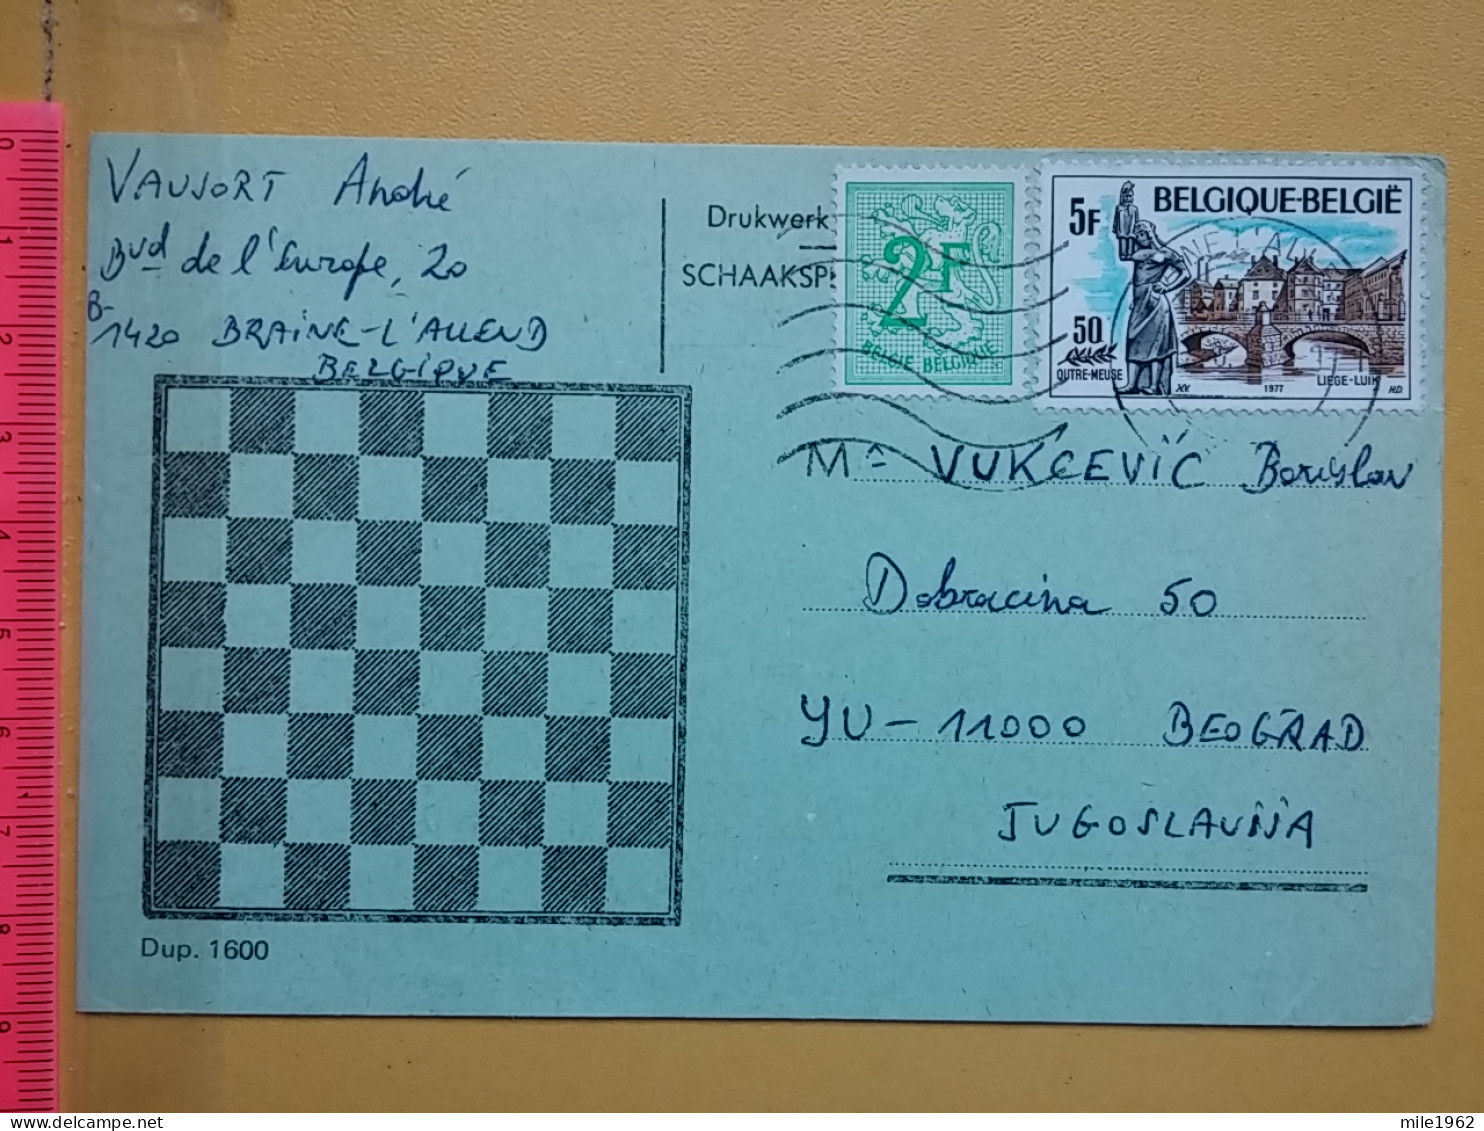 KOV 487-23- Correspondence Chess Fernschach Postcard,  BELGIE - BRAINE - YUGOSLAVIA, Schach Chess Ajedrez échecs - Schaken